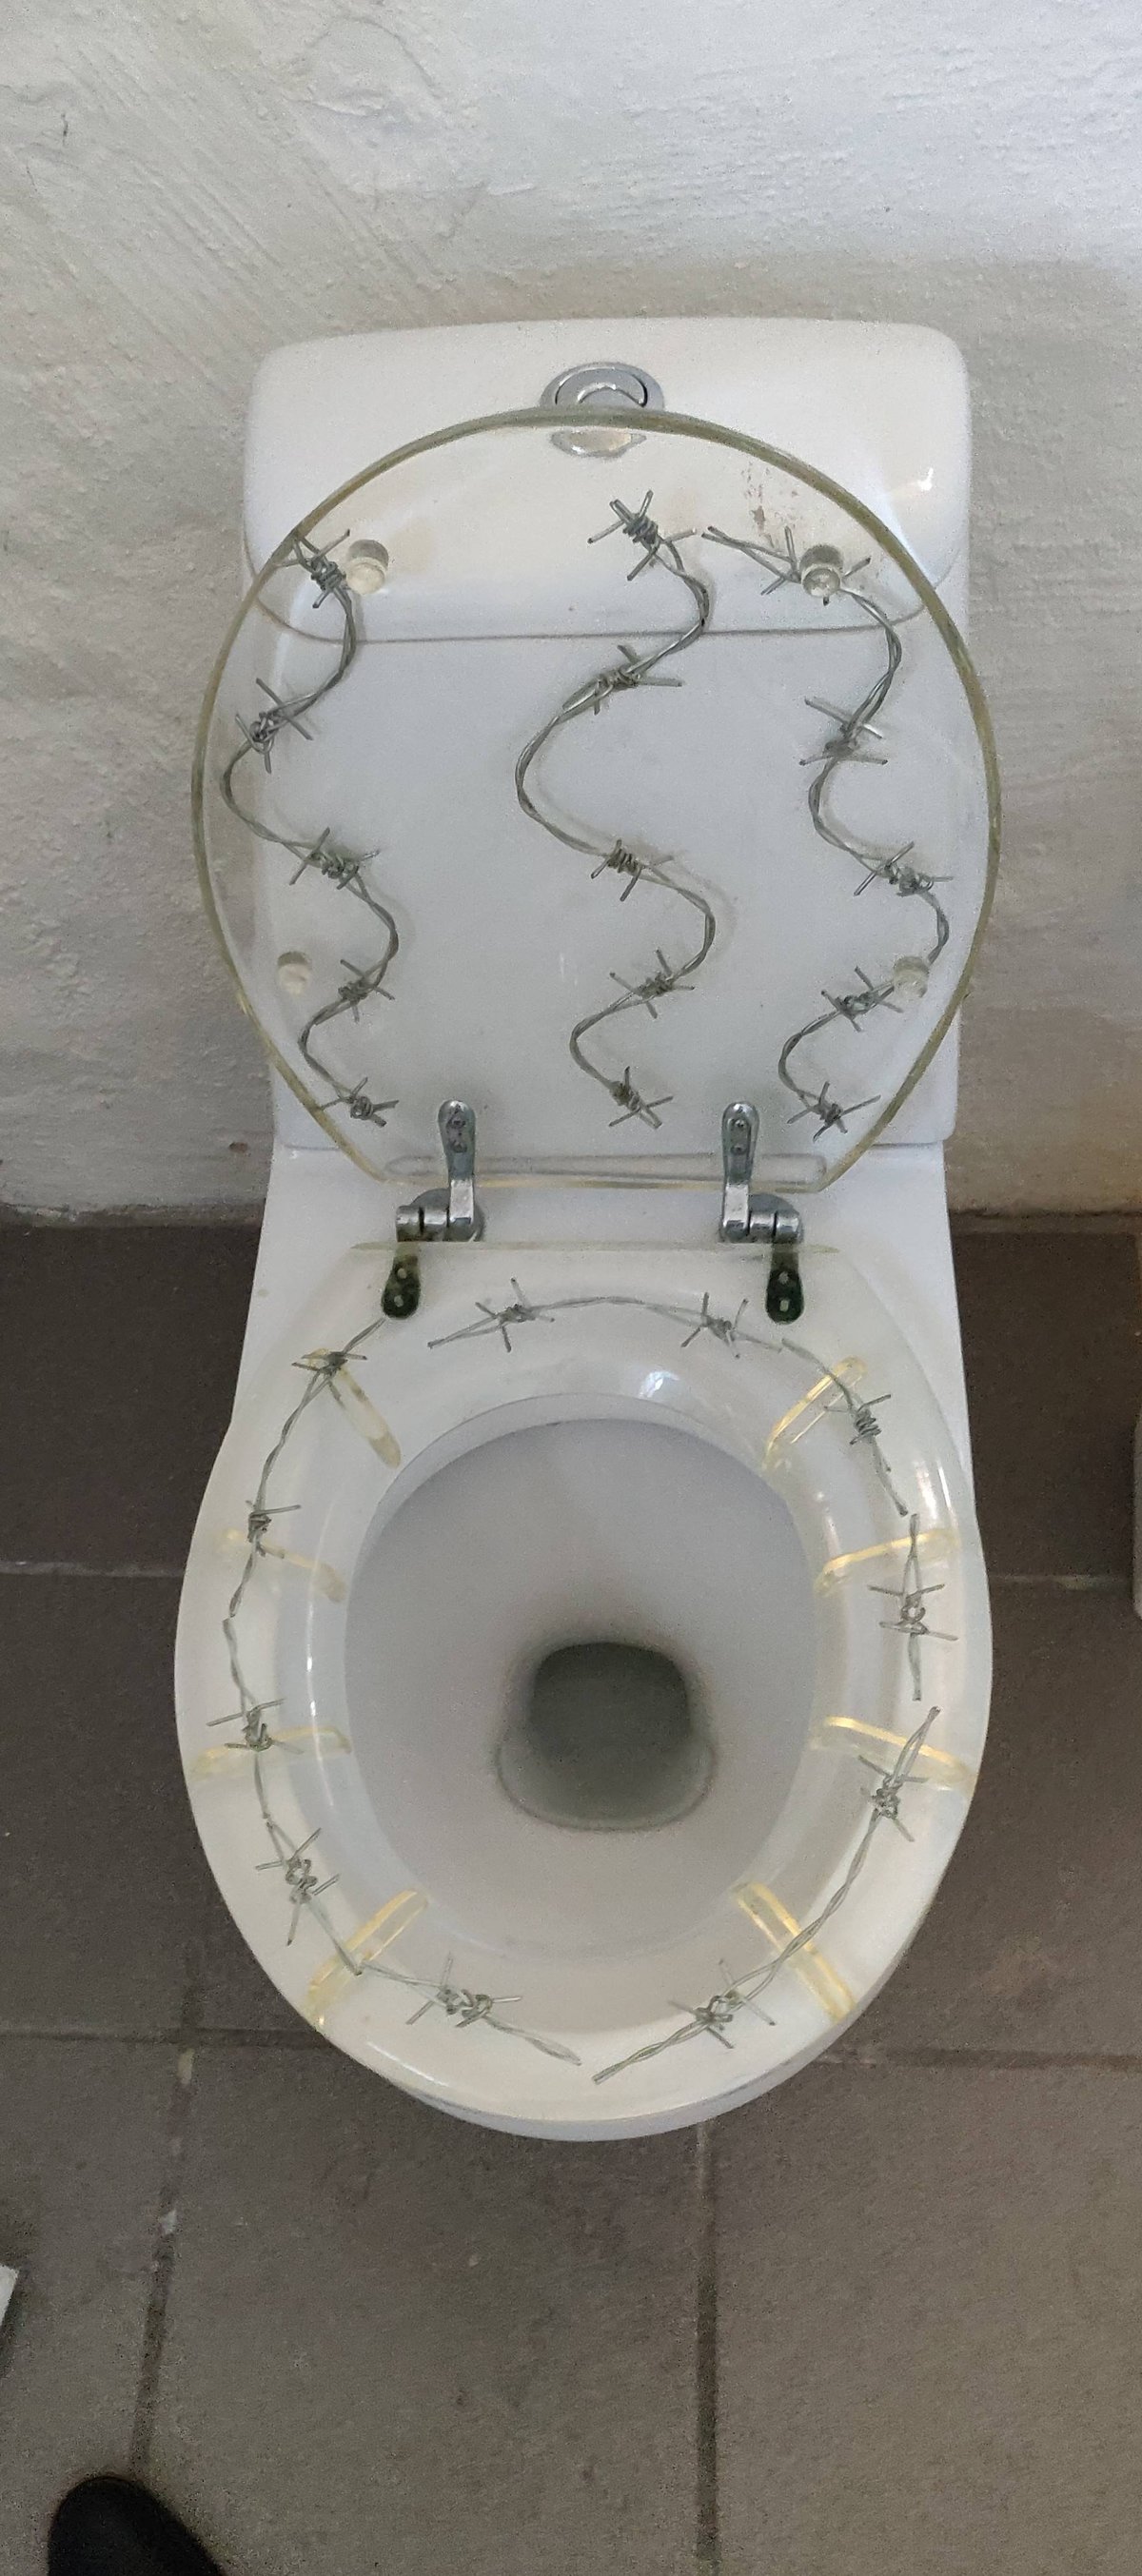 Необычные дизайнерские решения для туалетов